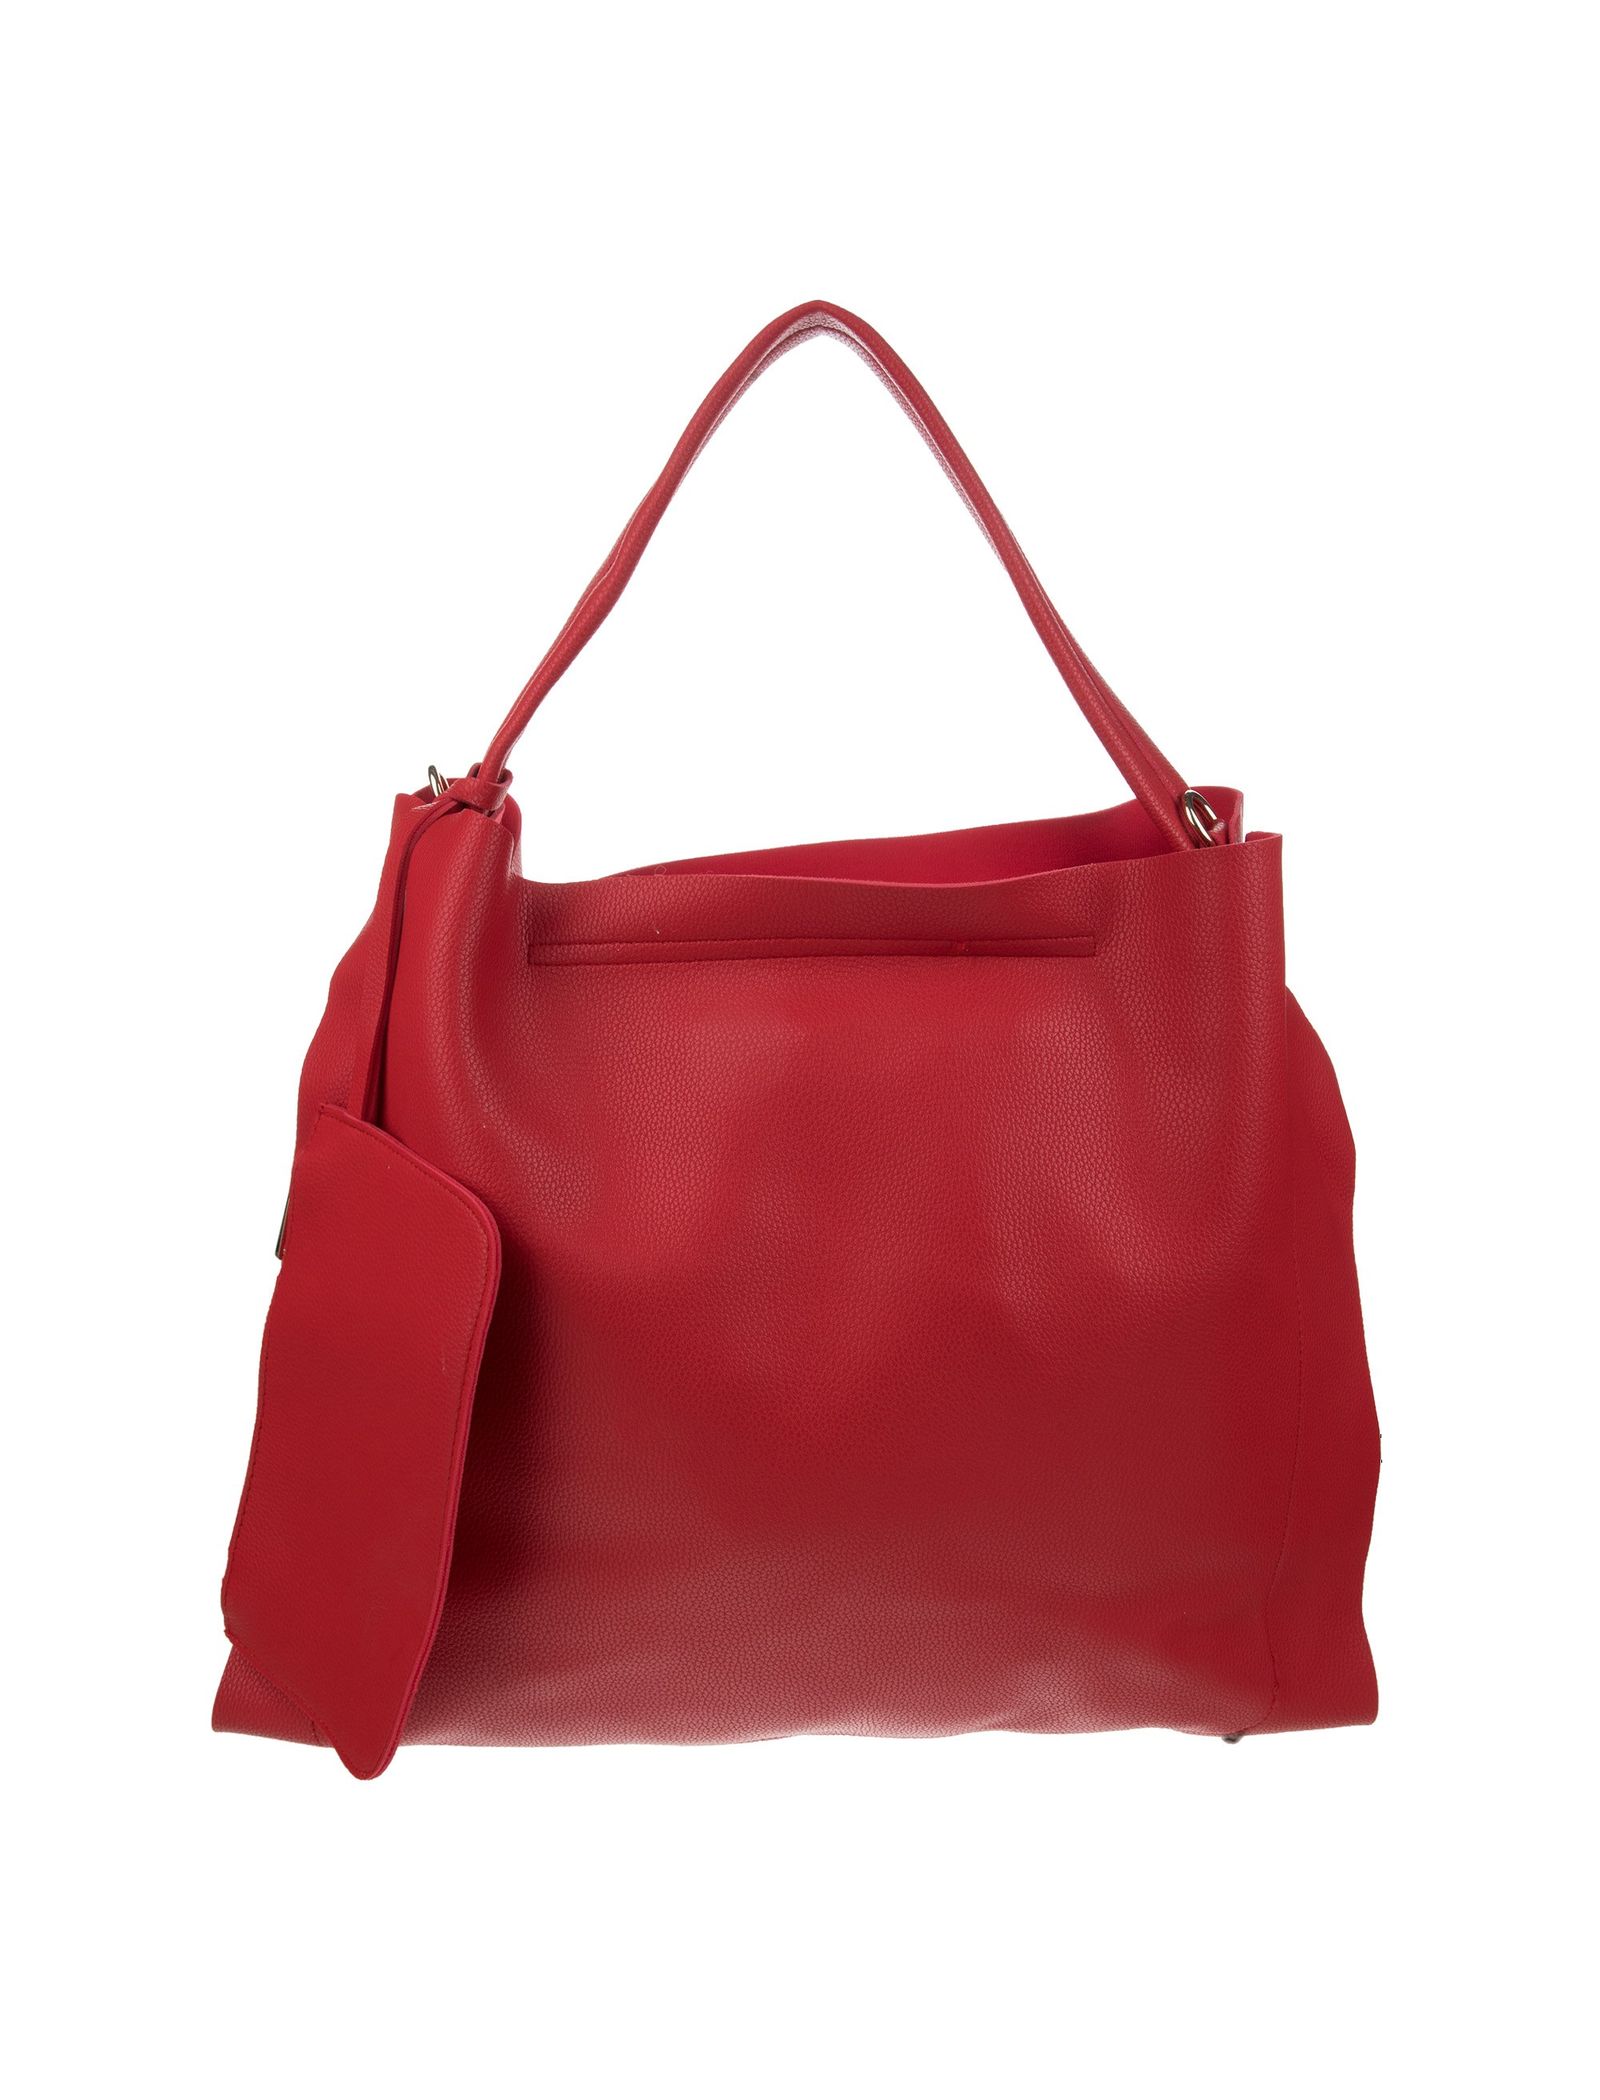 کیف دوشی روزمره زنانه - دادلین تک سایز - قرمز - 3